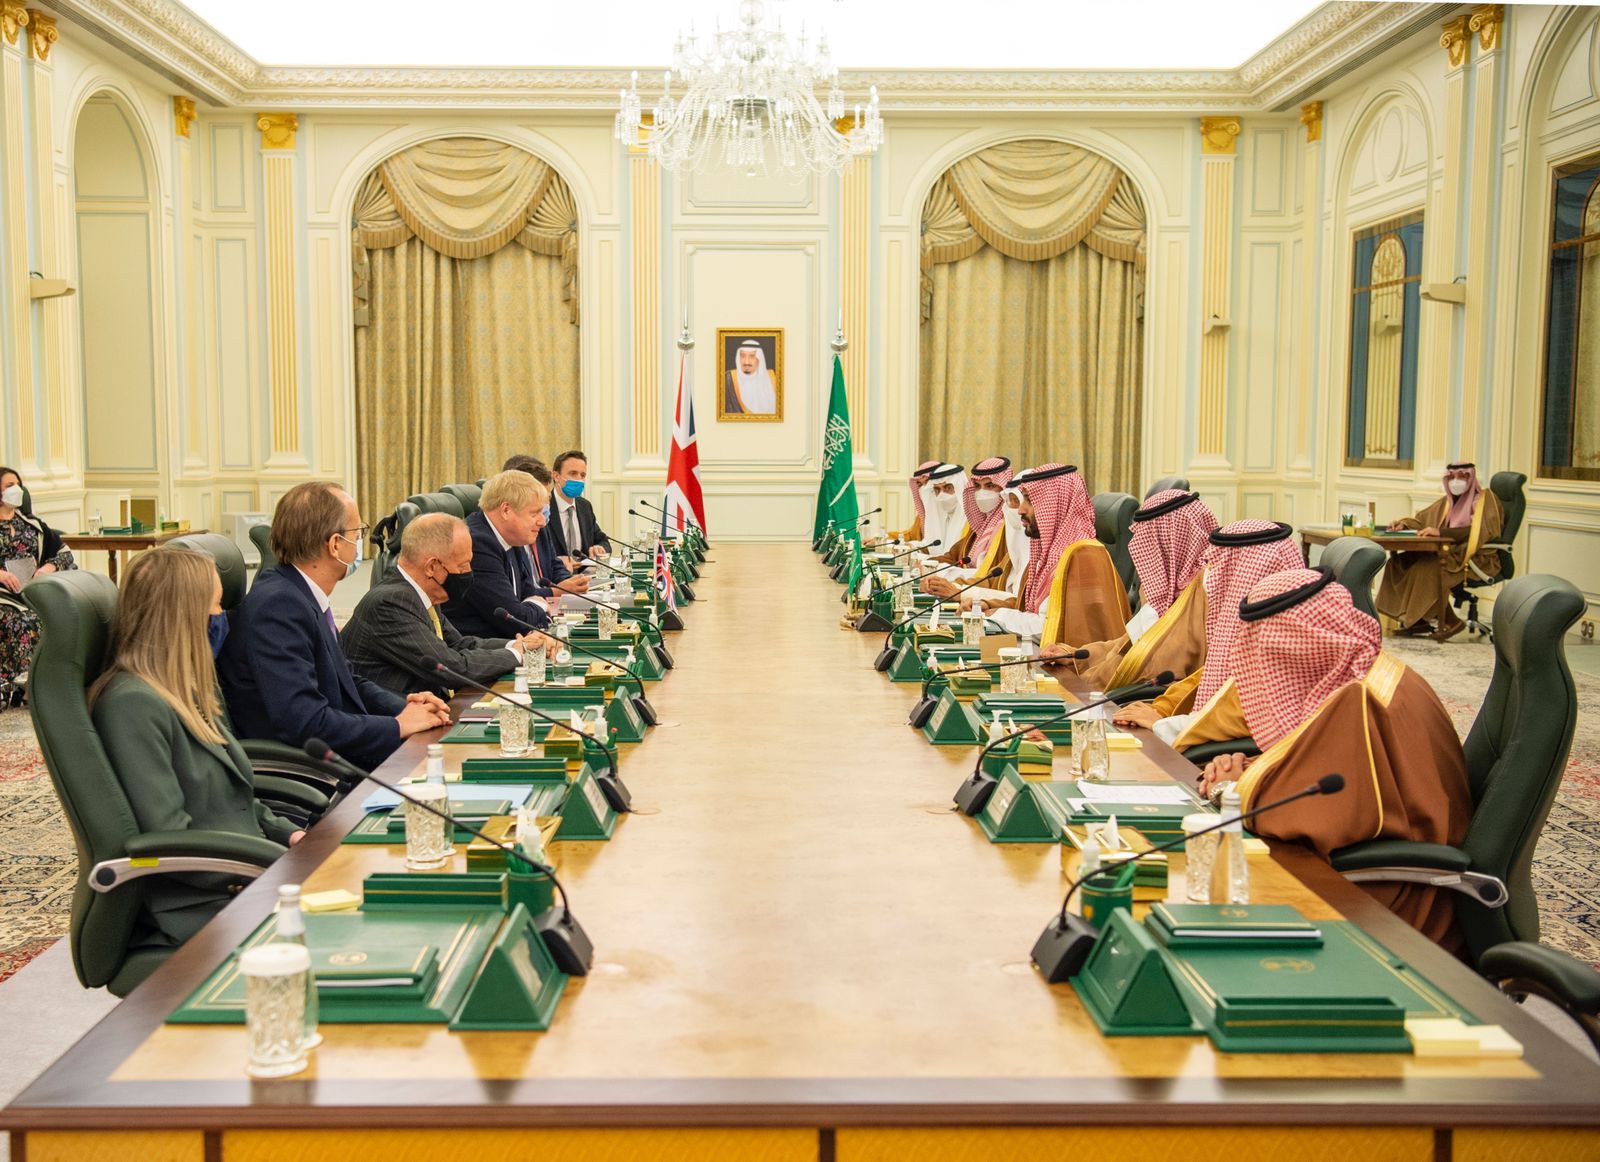 Le prince héritier saoudien, Mohammed ben Salmane, et le Premier ministre britannique, Boris Johnson, participent à une réunion du Conseil de partenariat stratégique entre l’Arabie saoudite et le Royaume-Uni. (SPA) 